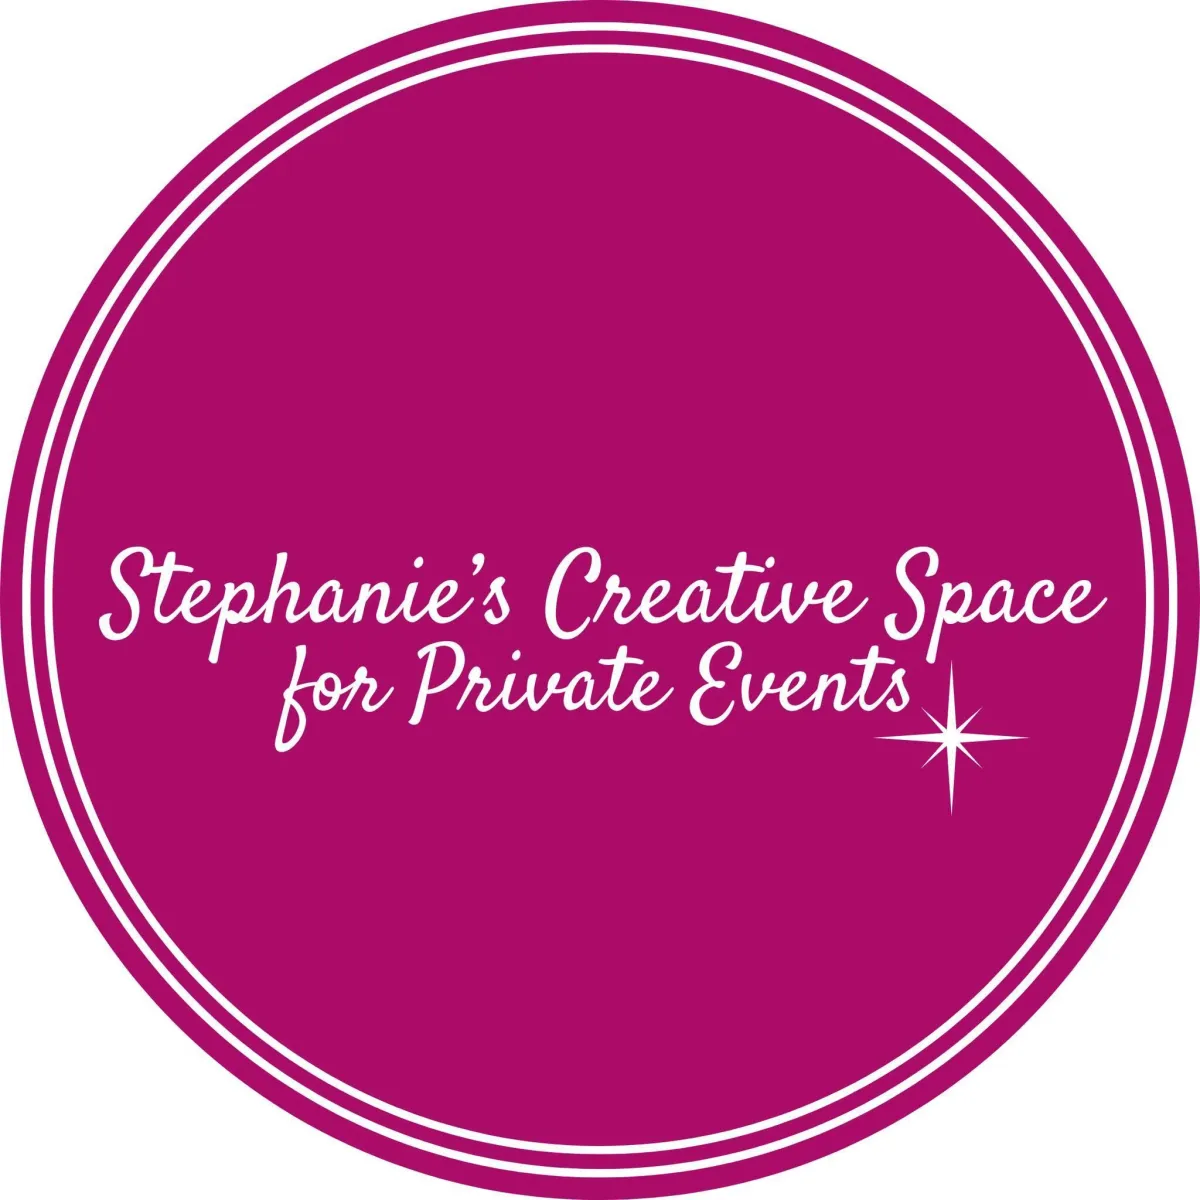 Stephanie's Creative Space